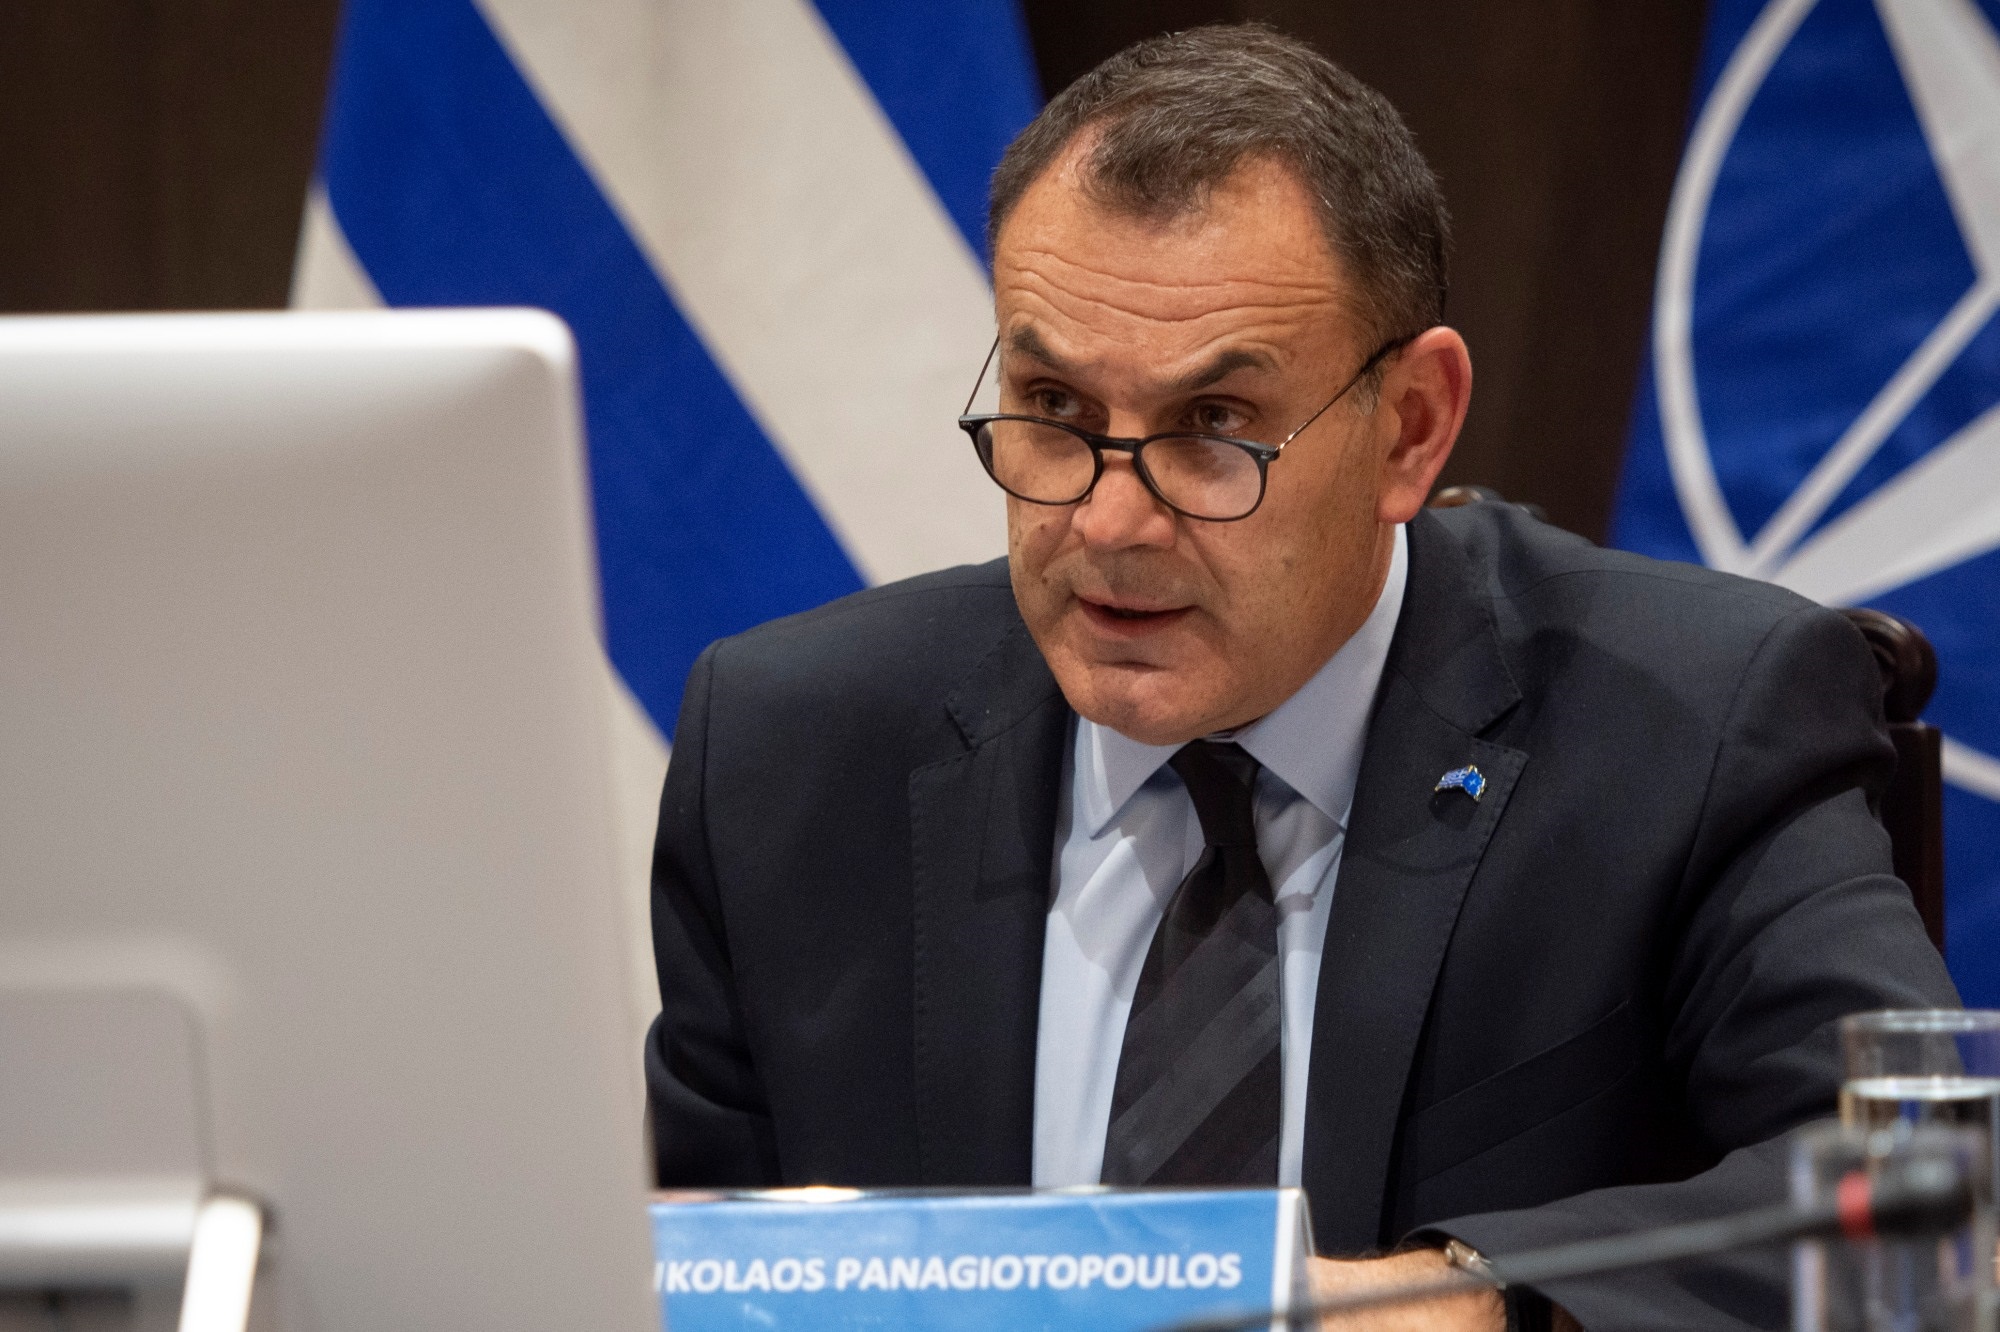 Ν.Παναγιωτόπουλος: «Μια ισχυρή Ελλάδα απαιτεί ικανές Ένοπλες Δυνάμεις – Δεν μπορούν να υπάρξουν χωρίς ανταγωνιστική αμυντική βιομηχανία»